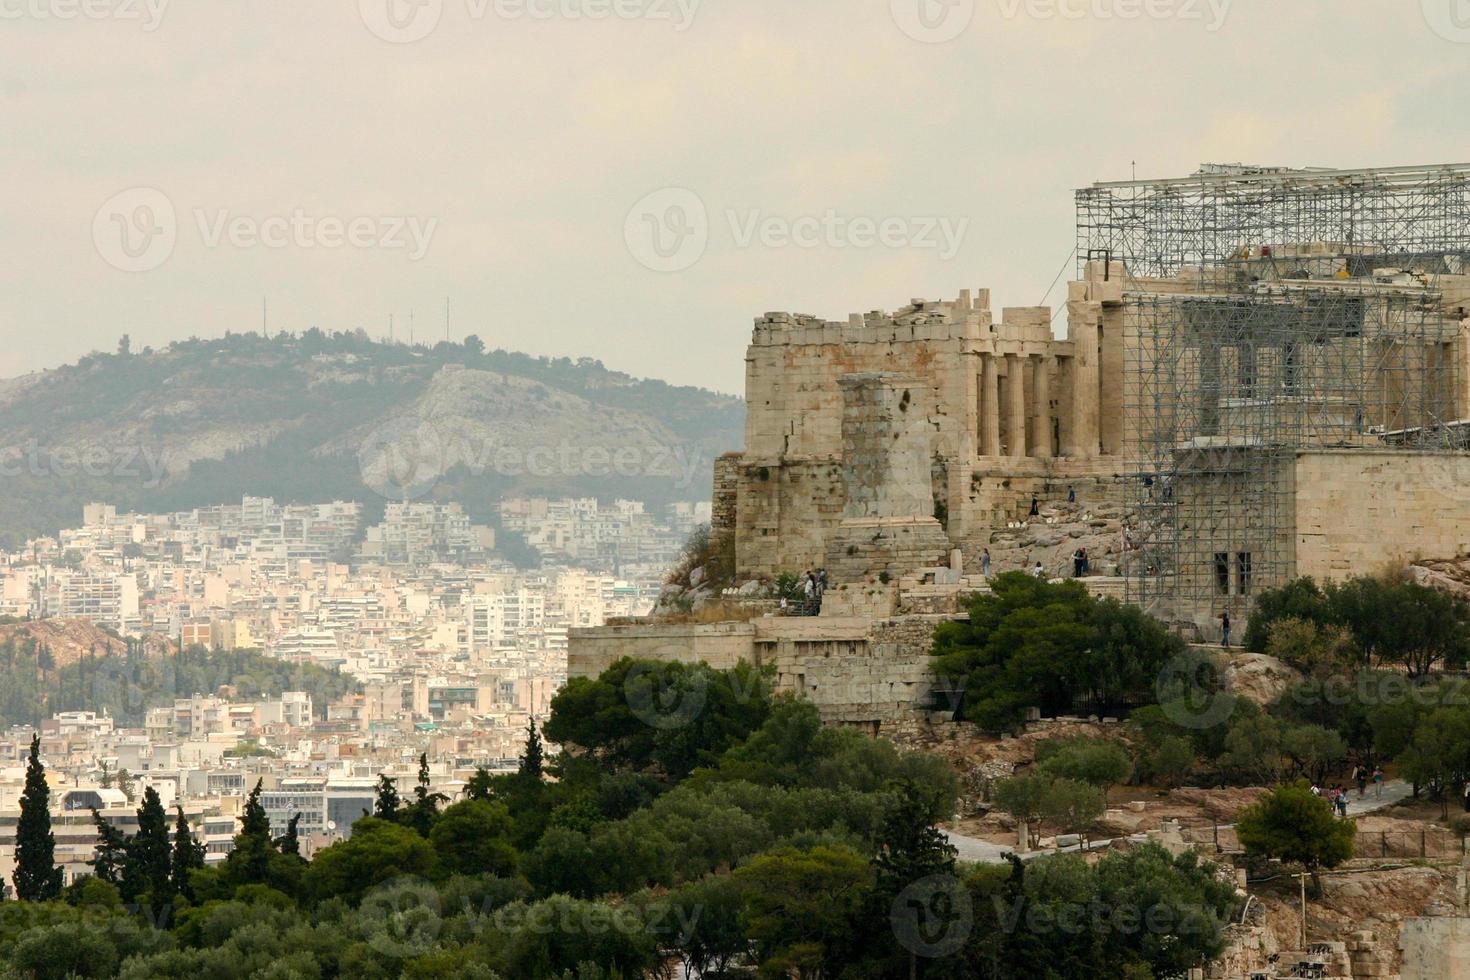 restaurering görs till Parthenon på toppen av Akropolis i Aten, Grekland foto